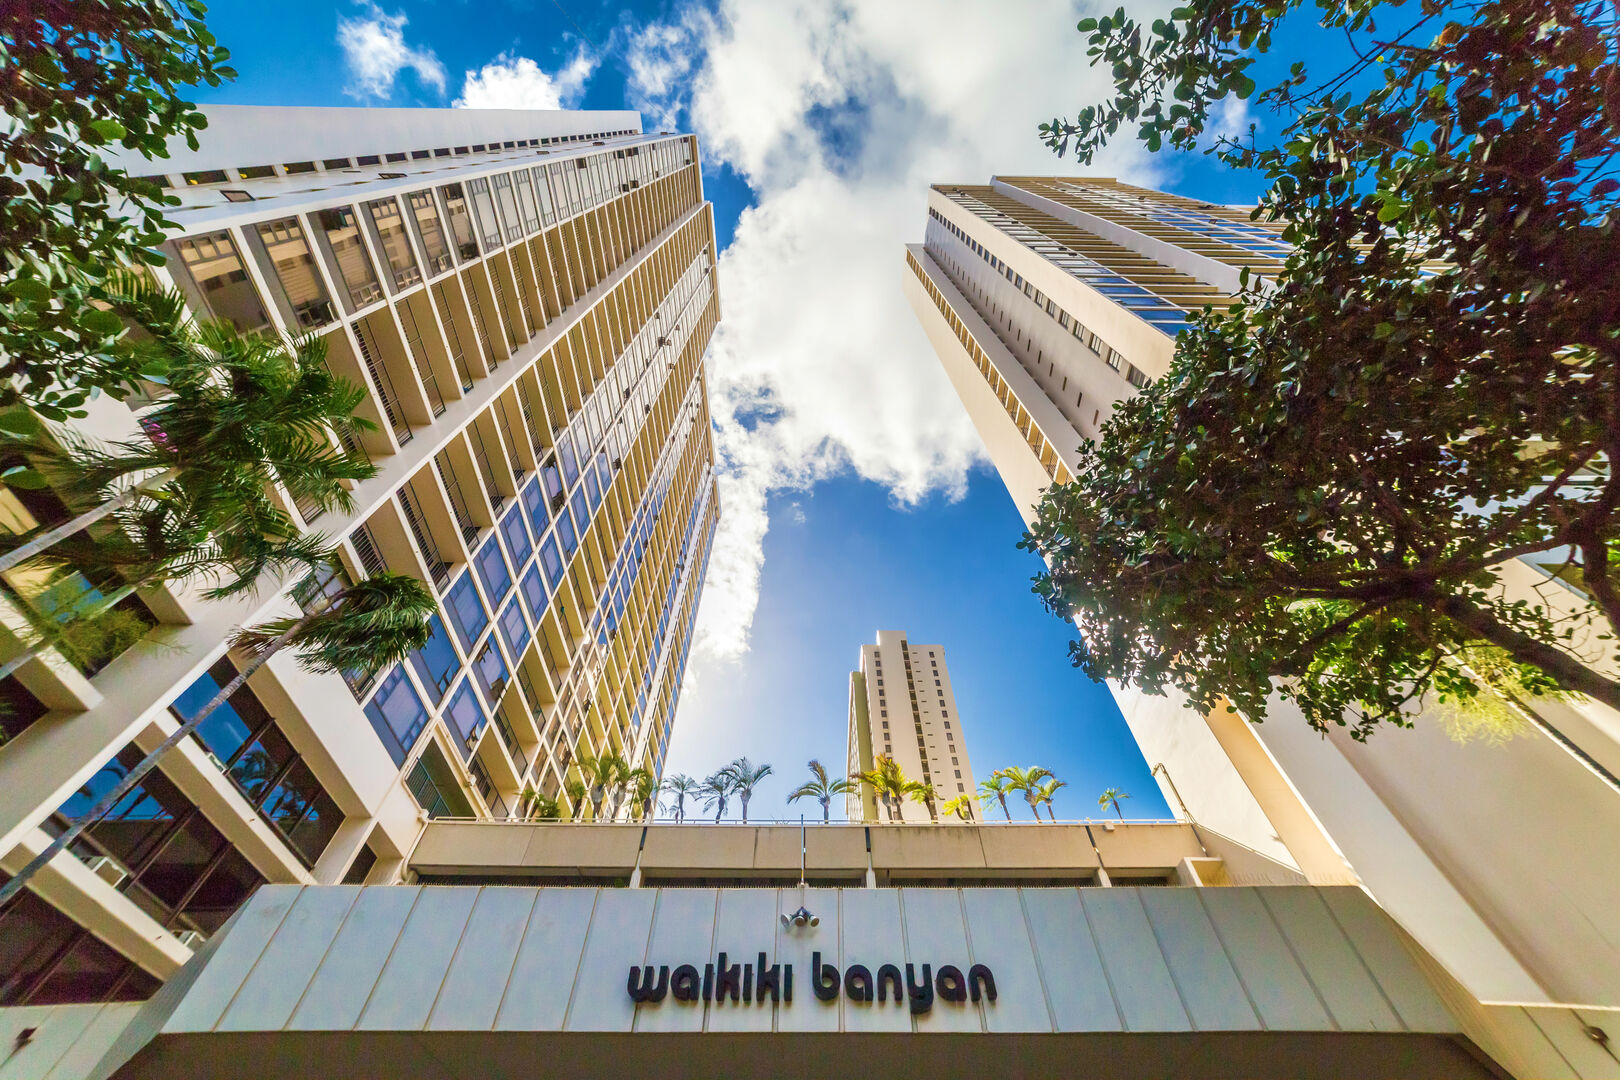 Waikiki Banyan towers